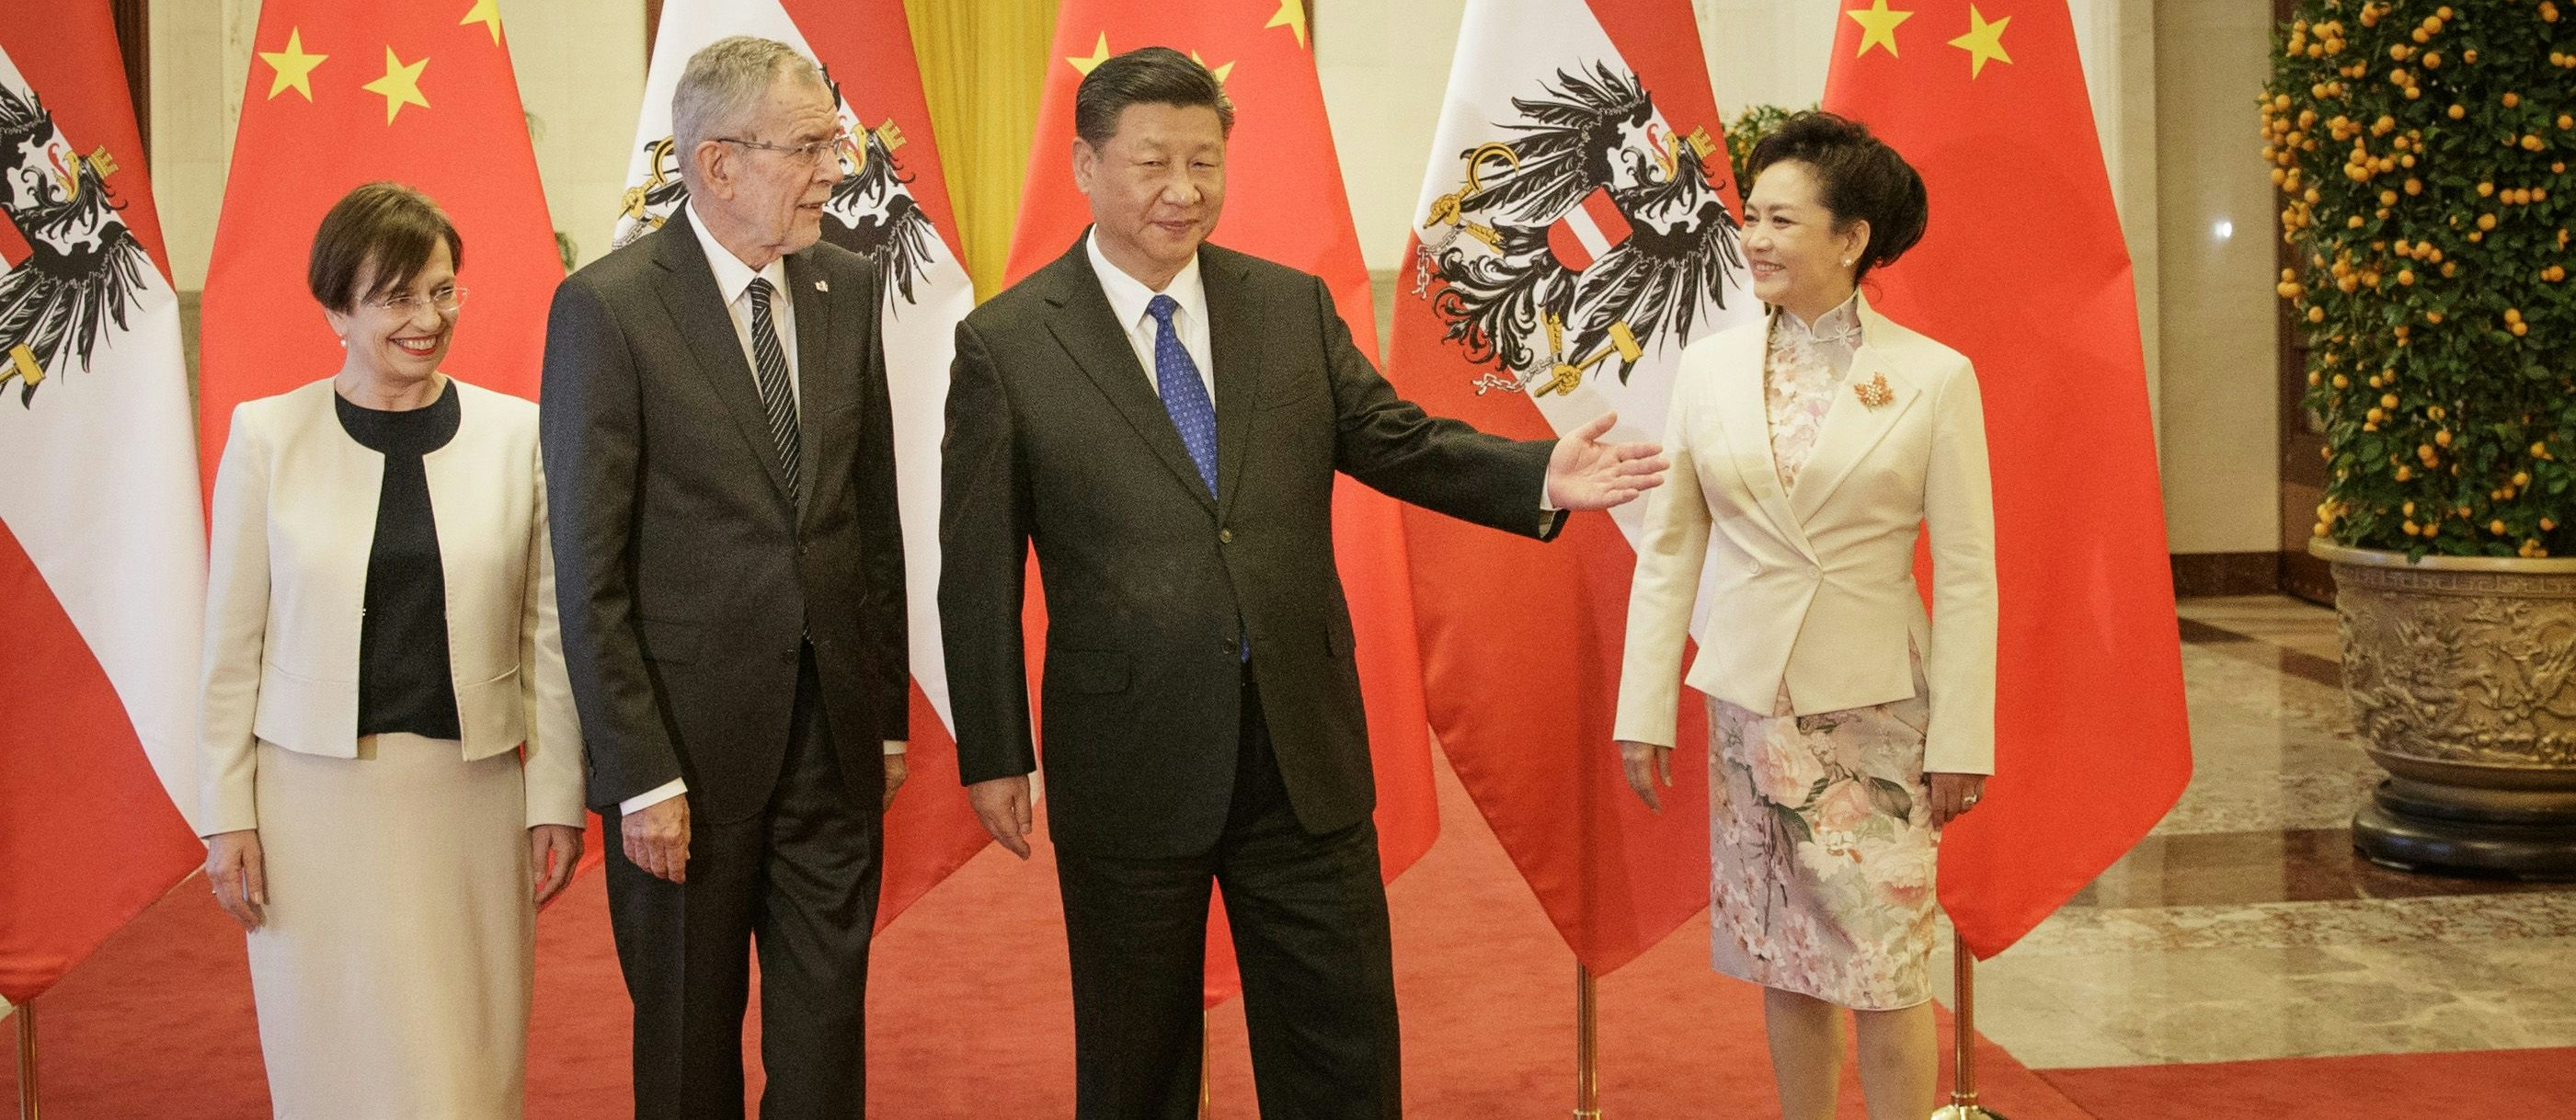 Bundespräsident Alexander Van der Bellen mit Ehefrau Doris Schmidauer und der chinesische Staatspräsident Xi Jinping mit Ehefrau Peng Liyuan im Rahmen eines Empfangs am 8. April 2018 in Peking